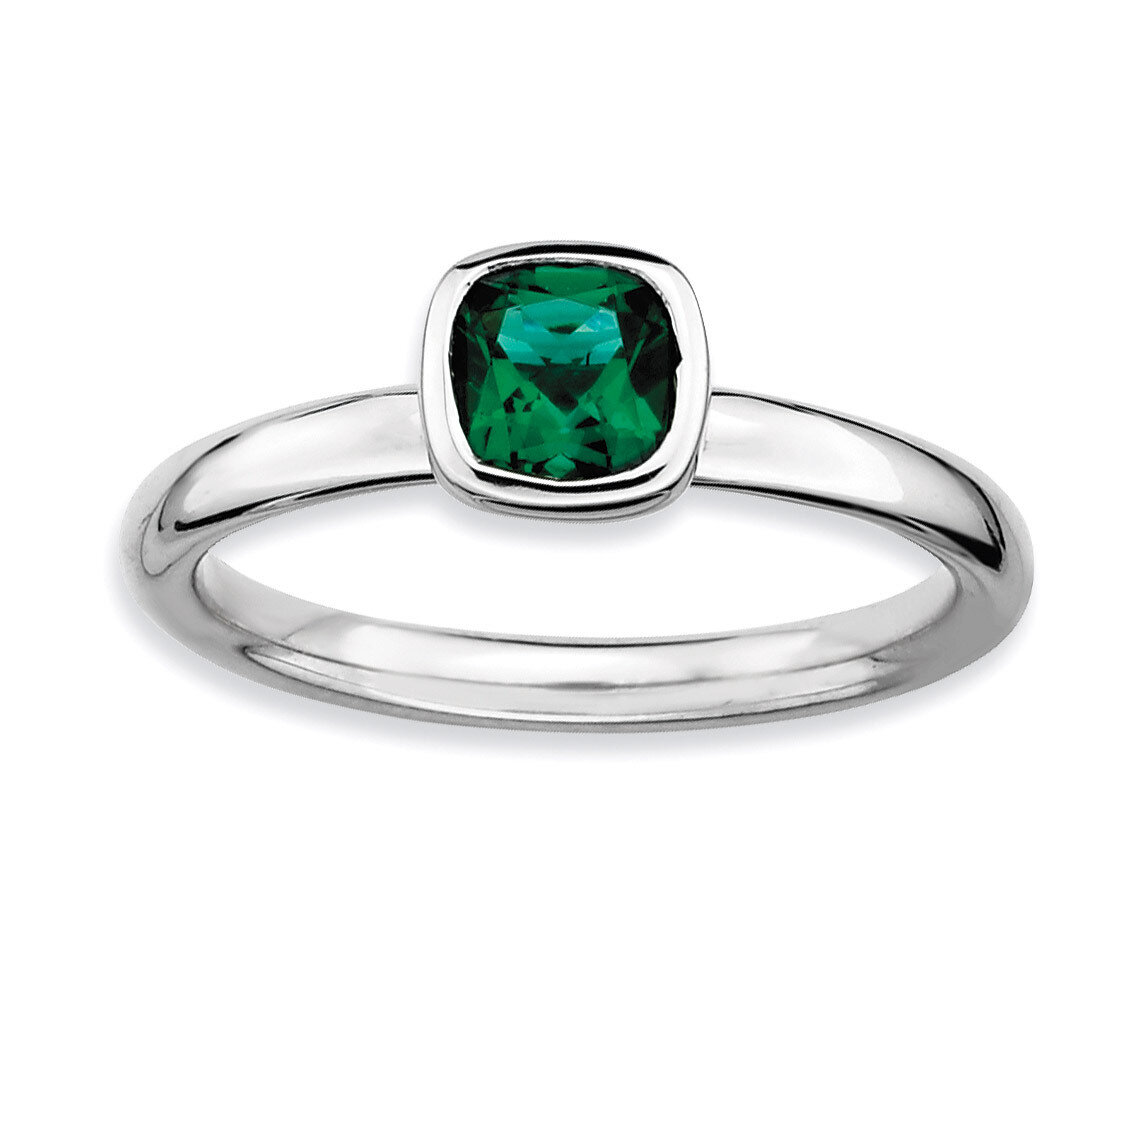 Cushion Cut Emerald Ring - Sterling Silver QSK450